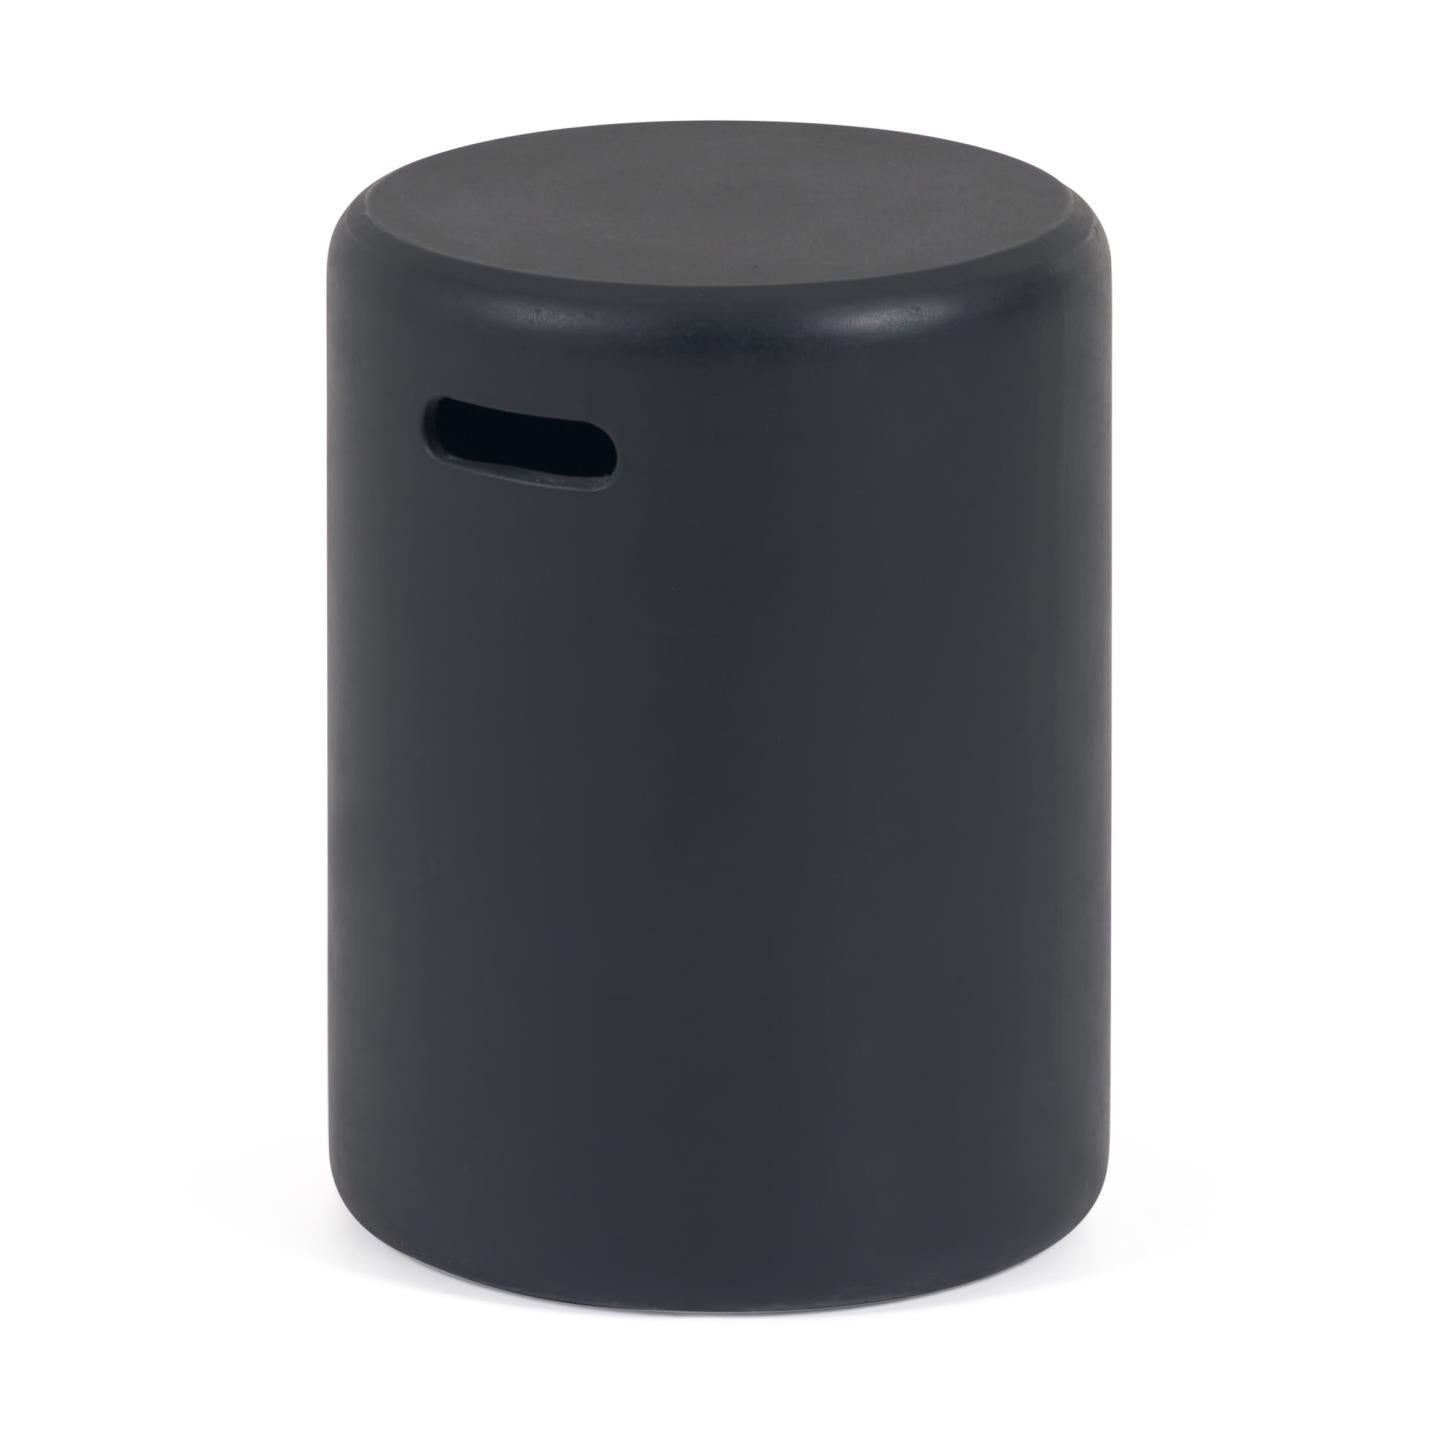 Taimi kültéri lábtartó vagy kisasztal betonból, fekete kivitelben Ø 35 cm